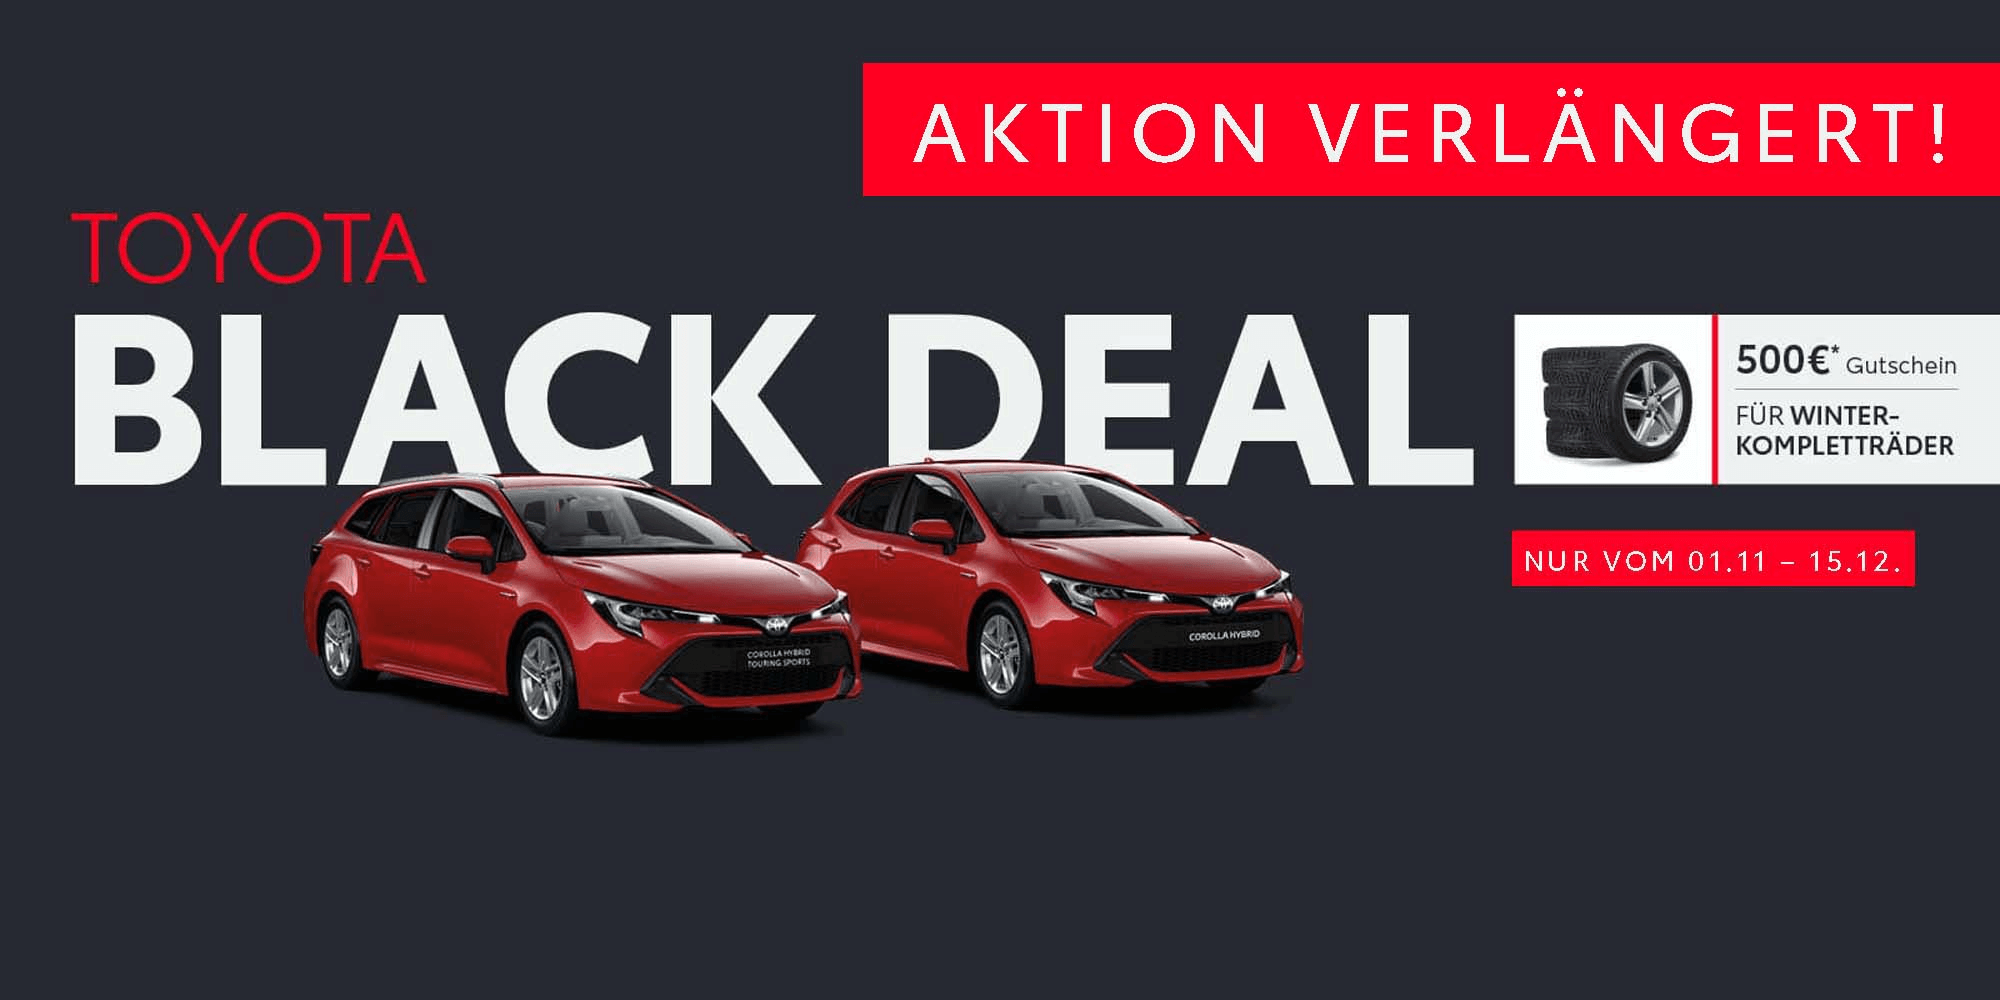 Header Image Toyota Black Deal